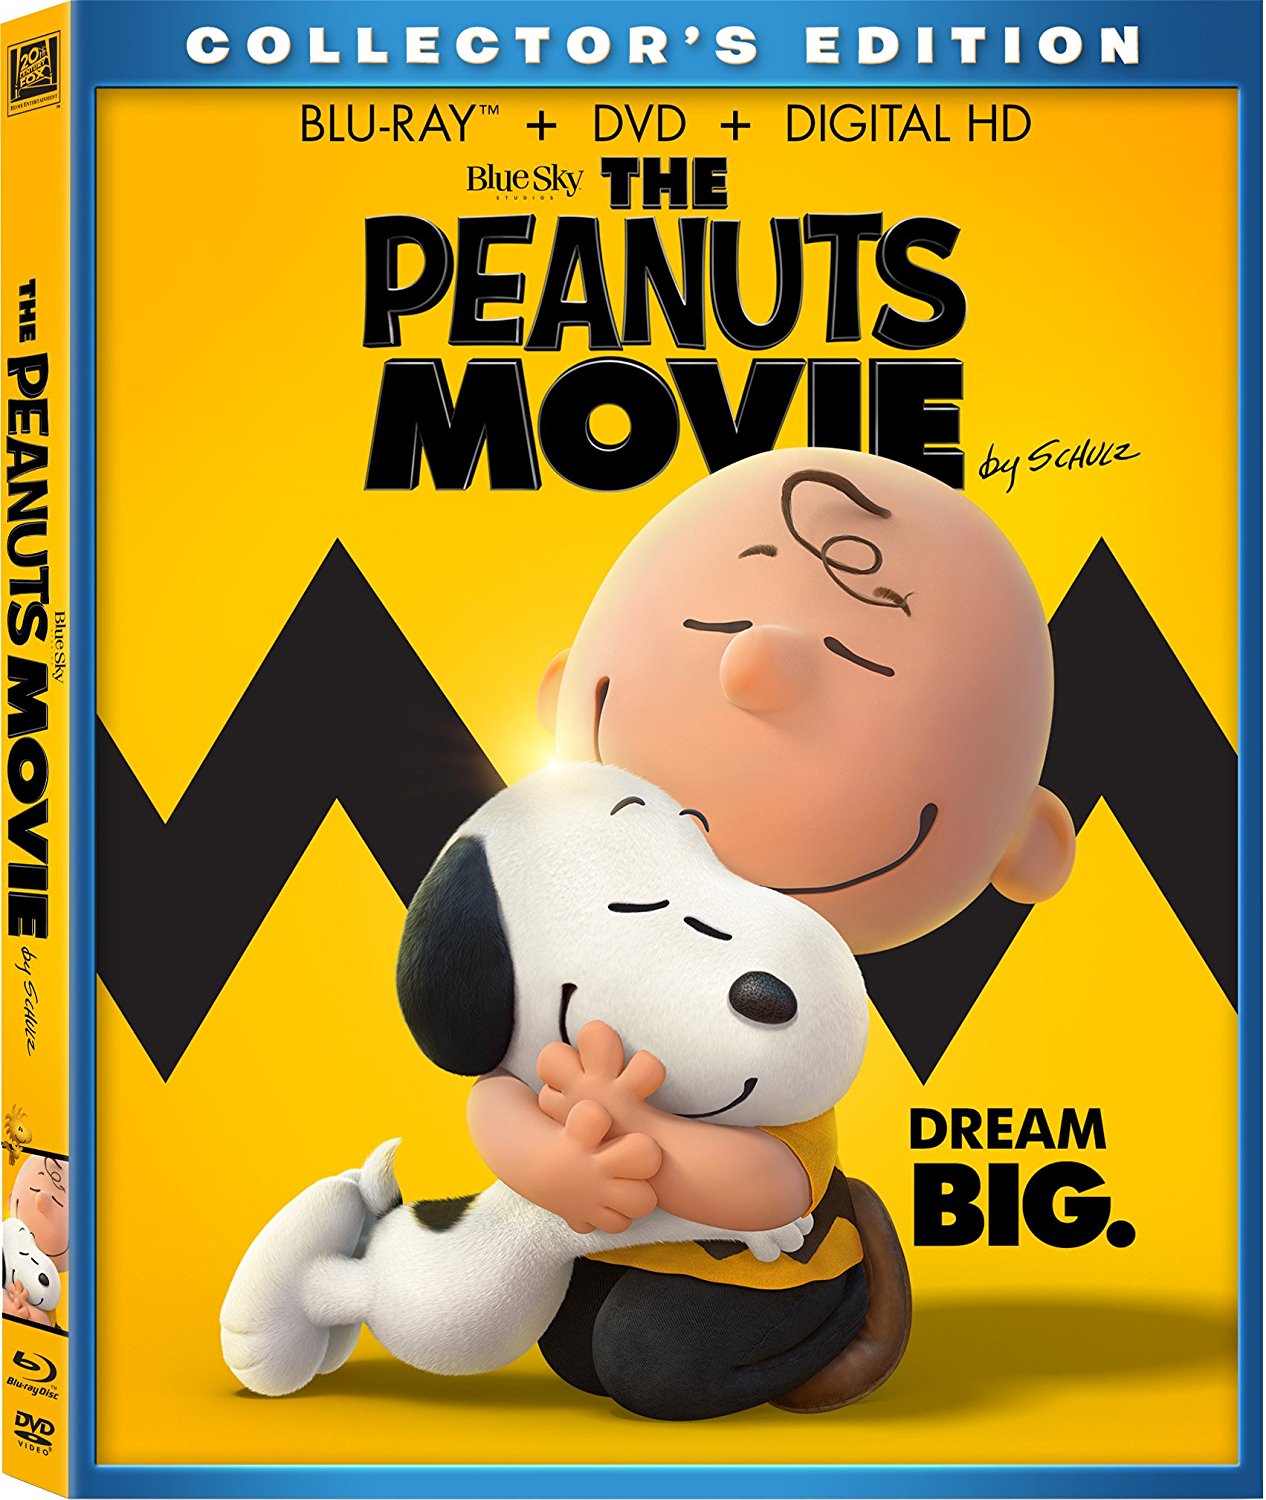 [史努比·花生大电影].The.Peanuts.Movie.2015.UHD.BluRay.2160p.HEVC.TrueHD.7.1-COASTER    45.39G-2.jpg